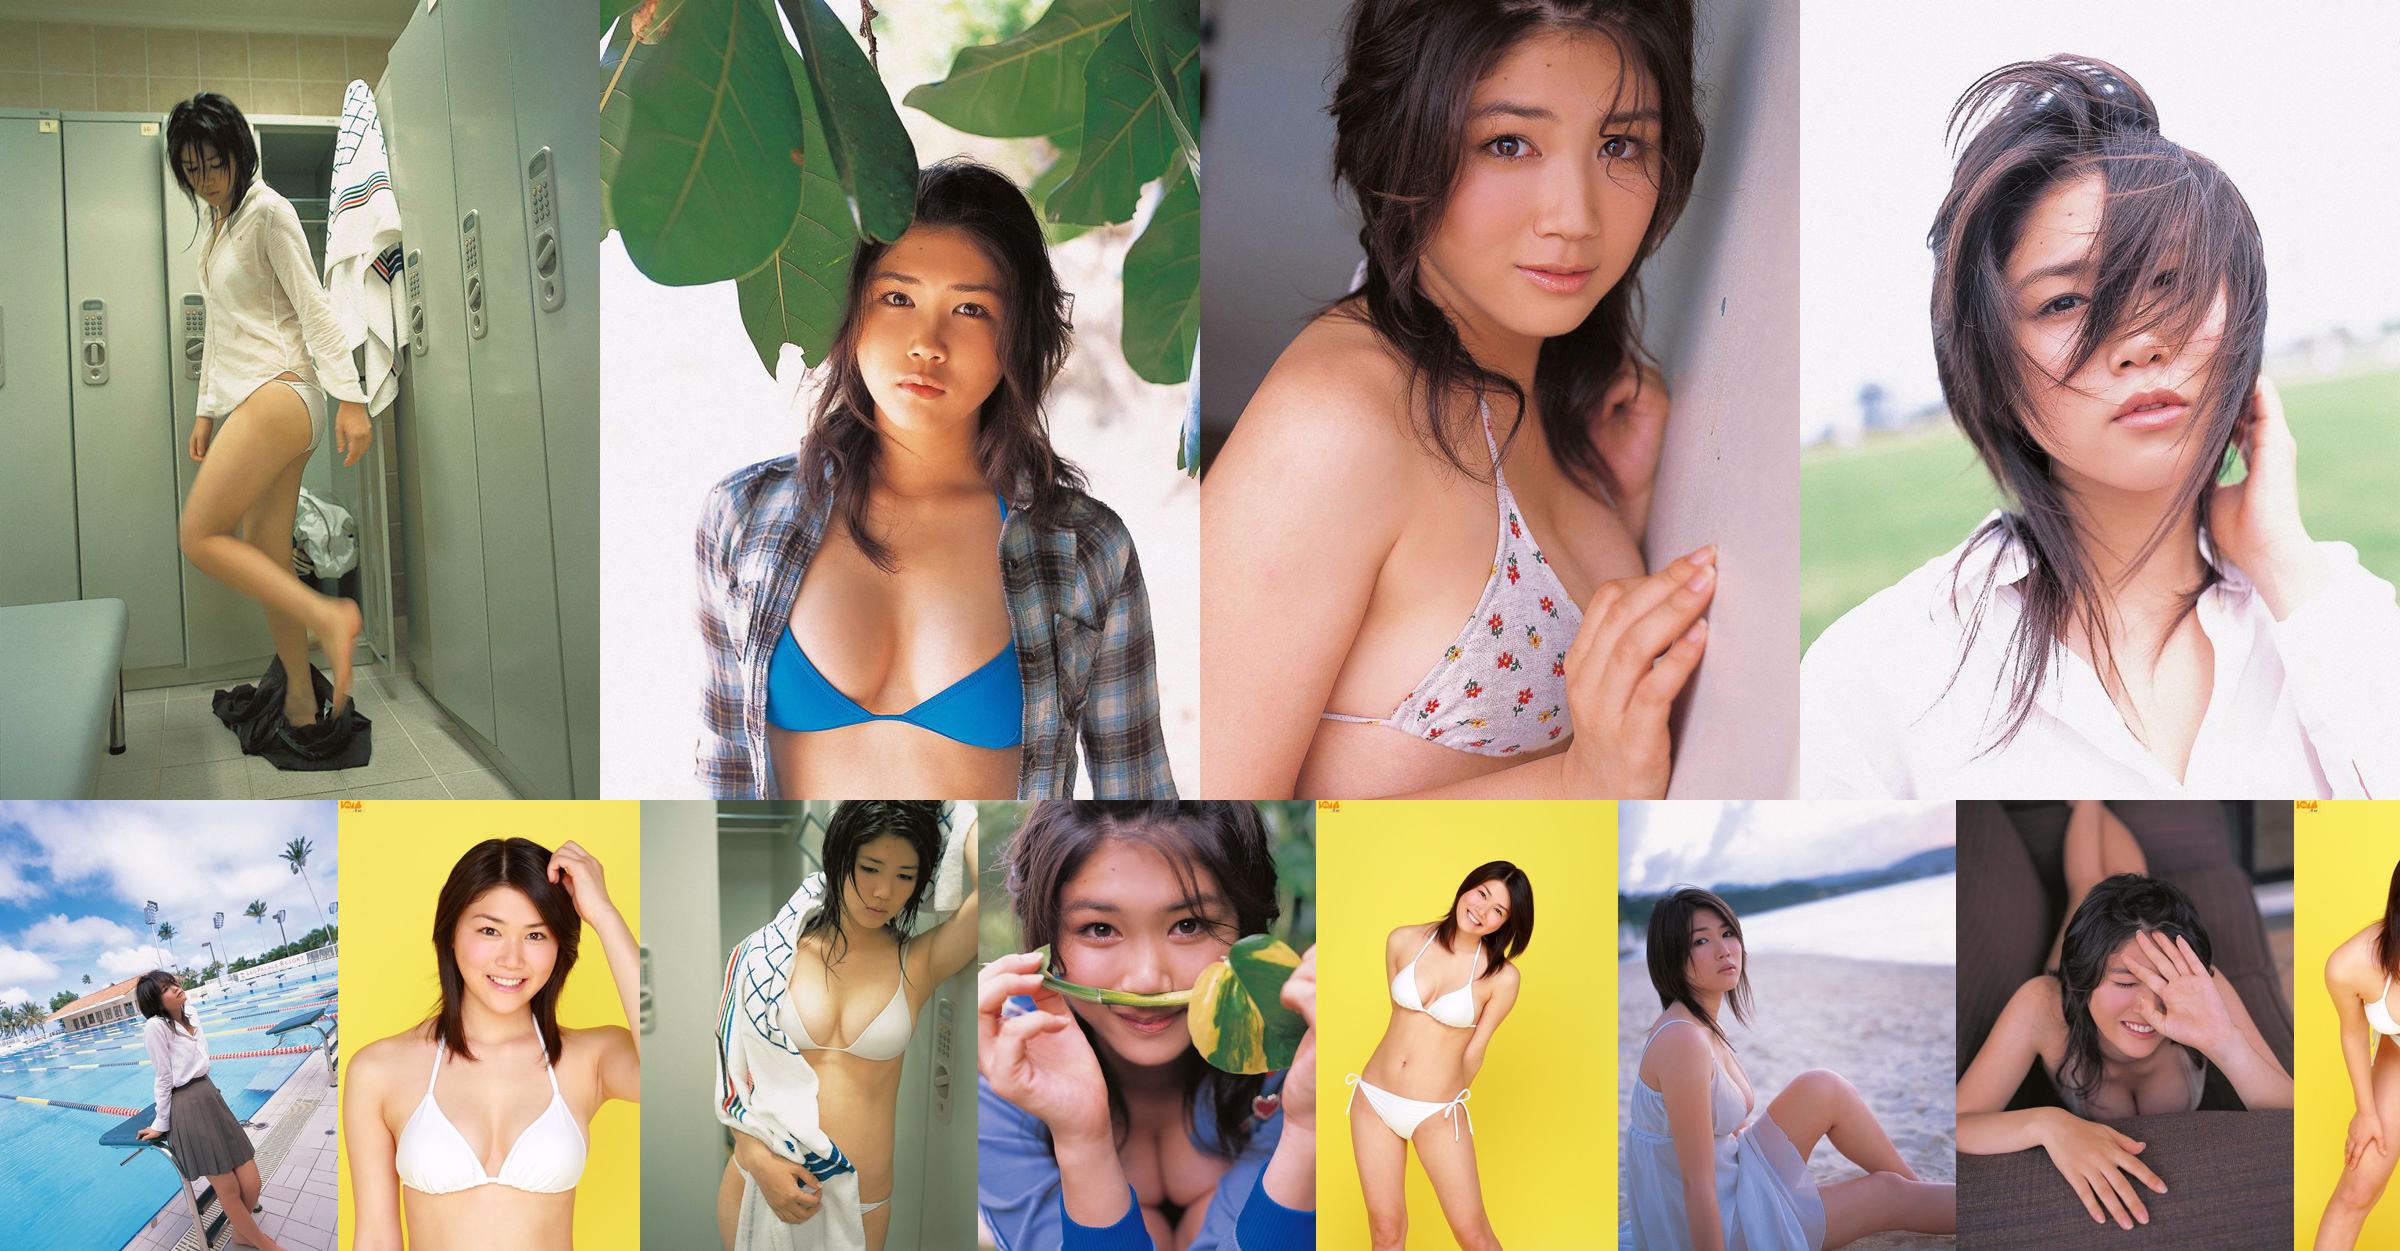 [Bomb.TV] August 2006 issue of Mami Nagaoka Mami Nagaoka / Mami Nagaoka No.019238 Page 1